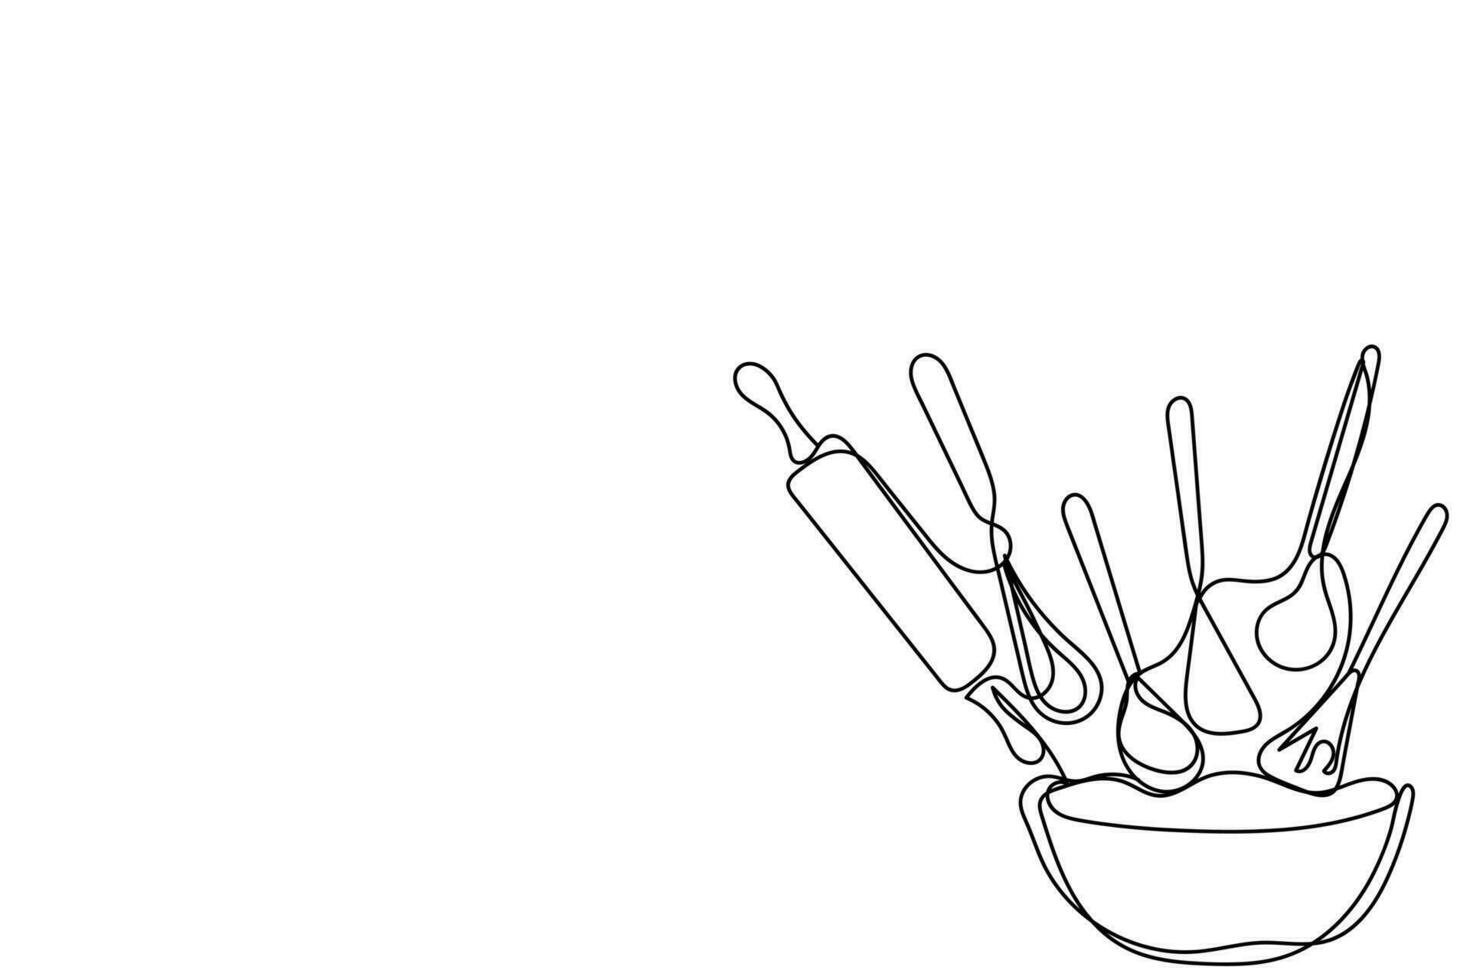 kontinuerlig linje konst av kök redskap och bestick uppsättning. sked, kniv, spatel, gafflar, tallrikar, skålar, kryddor burkar, kastrull och fräsning panorera vektor. vektor